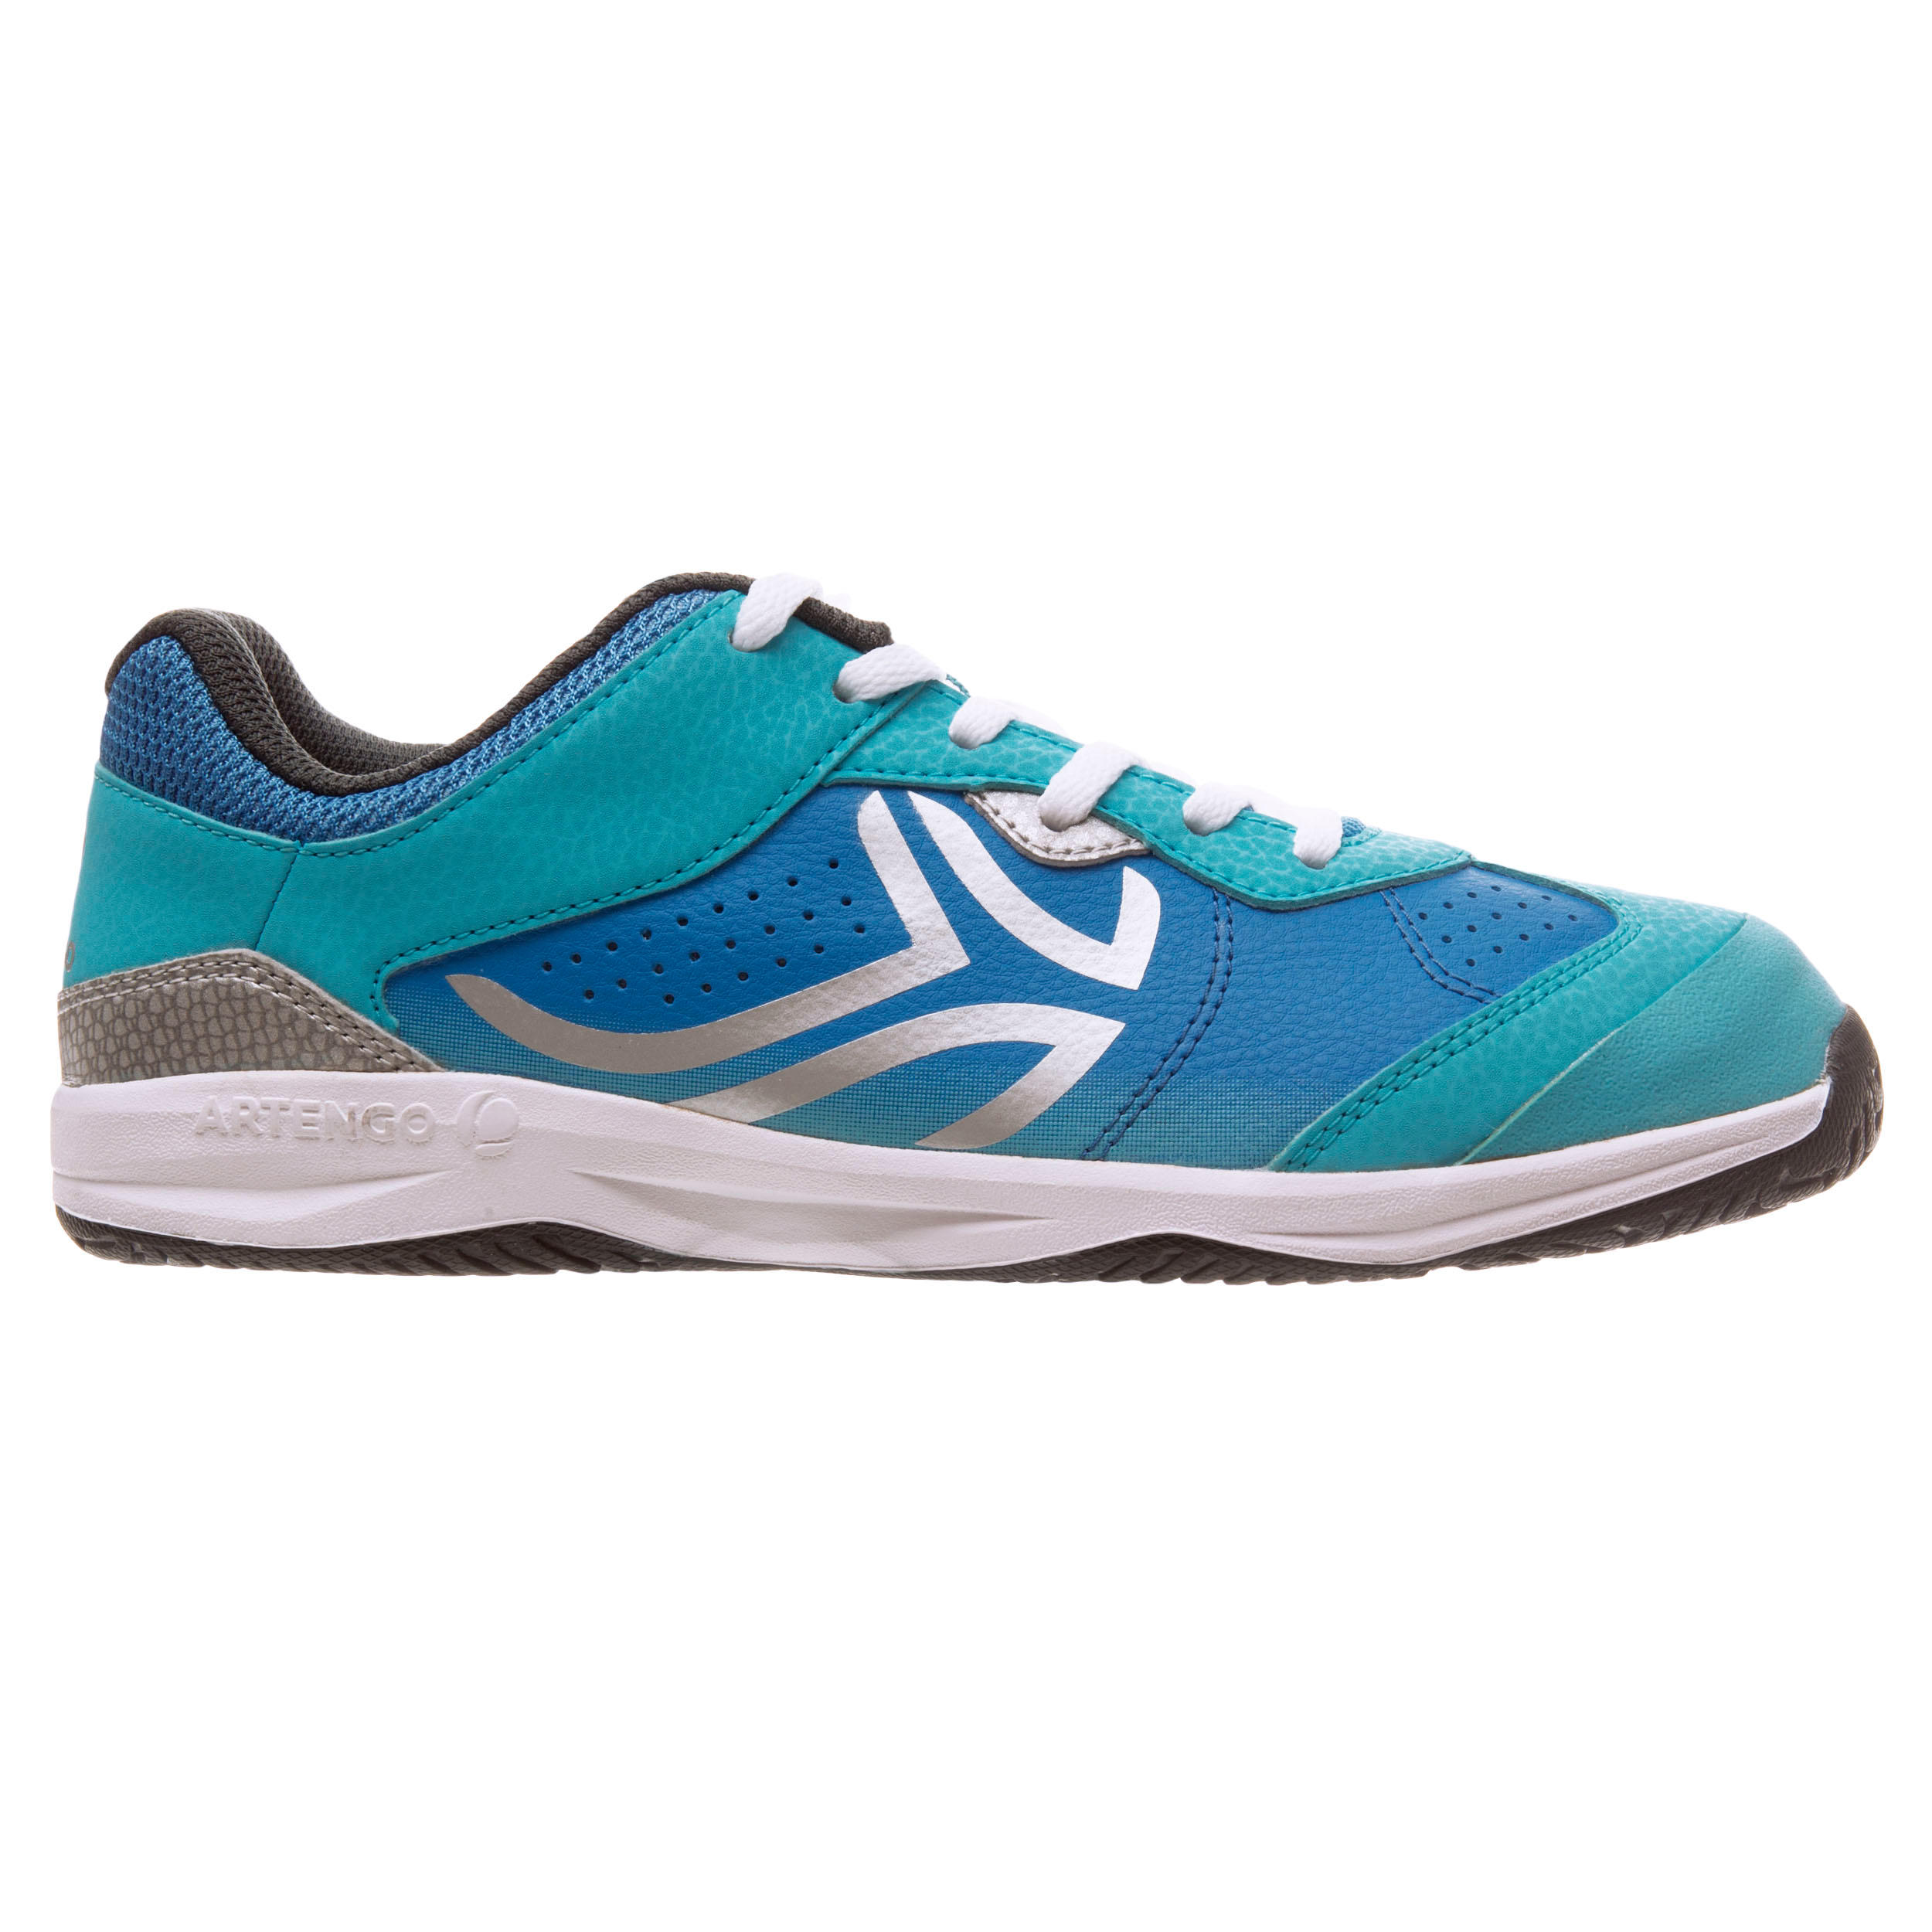 ARTENGO TS760 Kids' Lace-Up Tennis Shoes - Light Blue